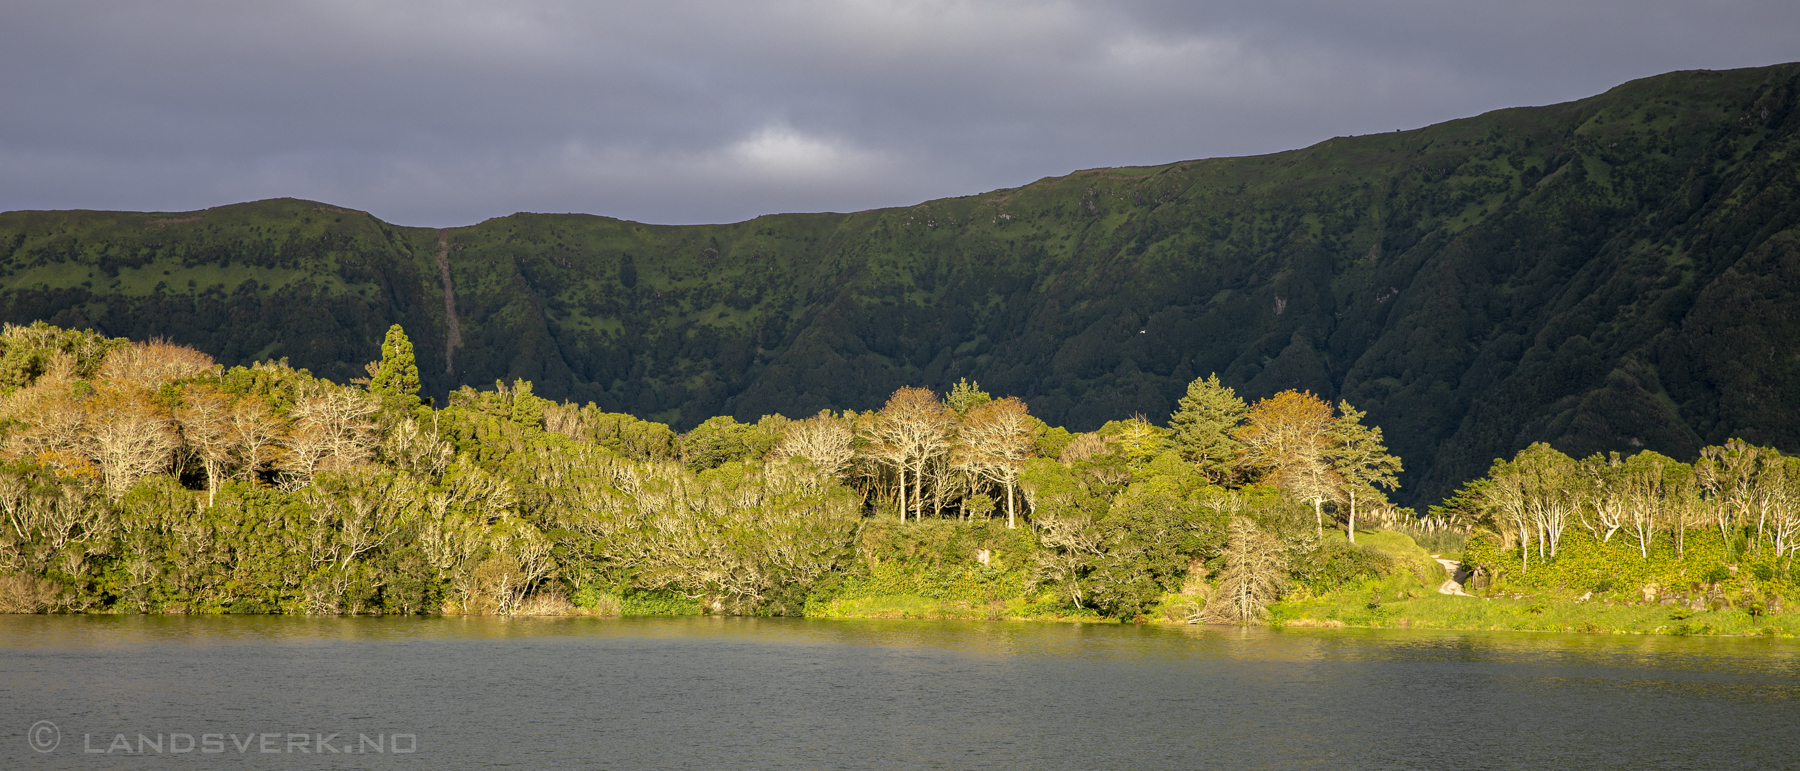 Lagoa Azul, Sete Cidades. São Miguel, Azores. (Canon EOS 5D Mark IV / Canon EF 24-70mm f/2.8 L II USM)